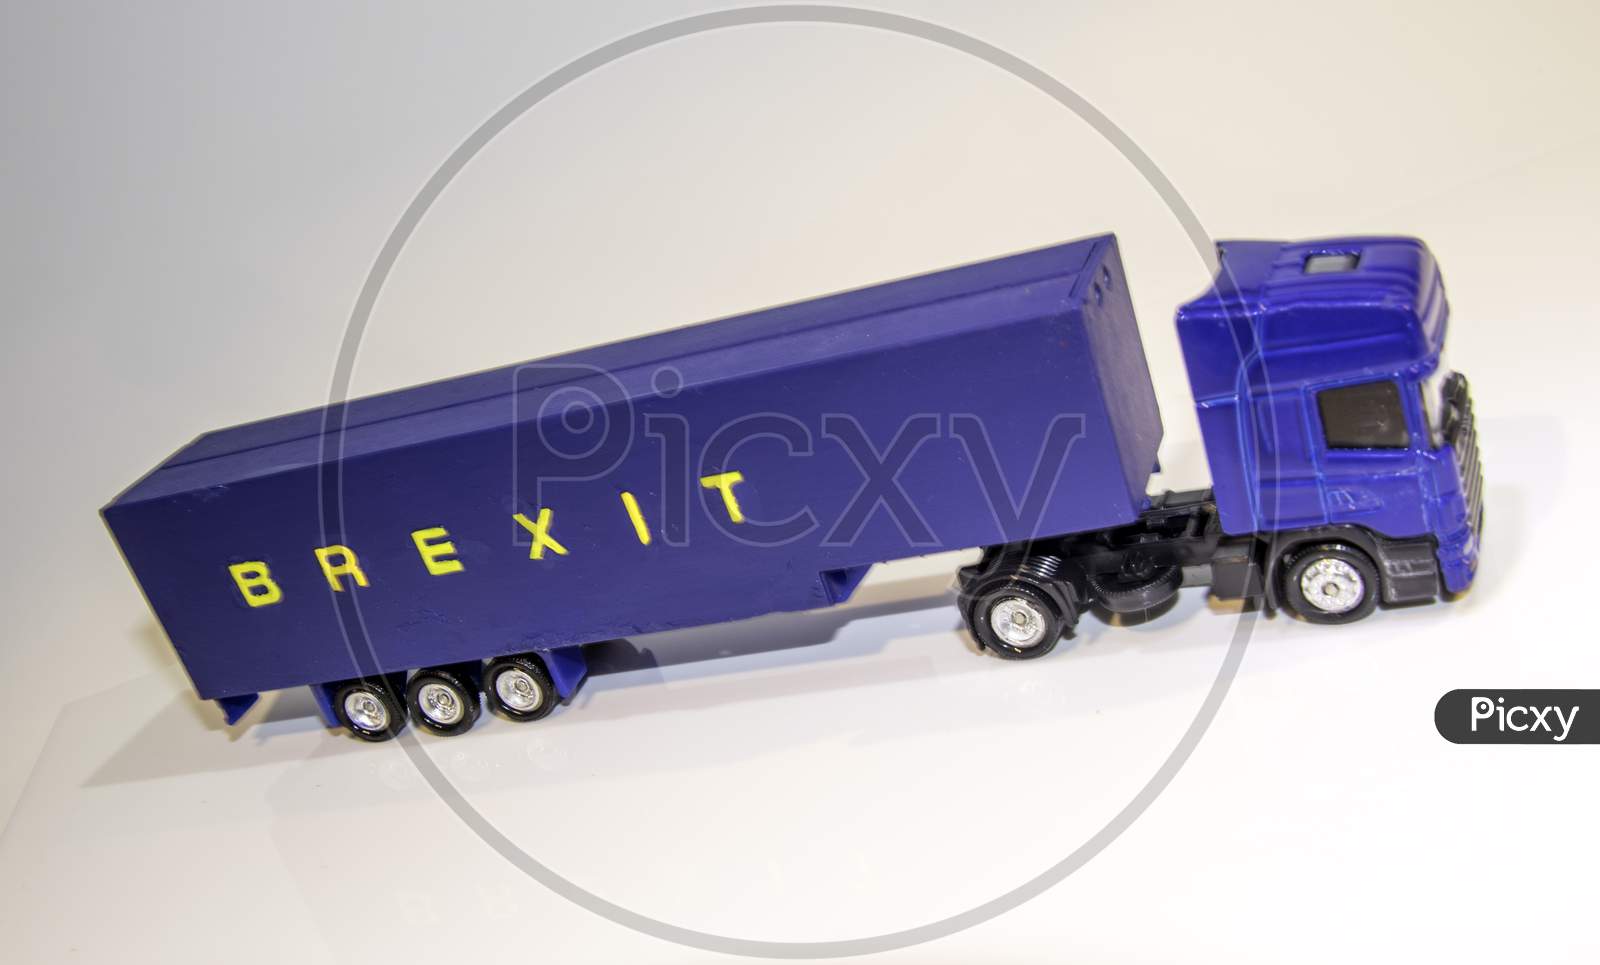 Brexit Heavy Goods Vehicle